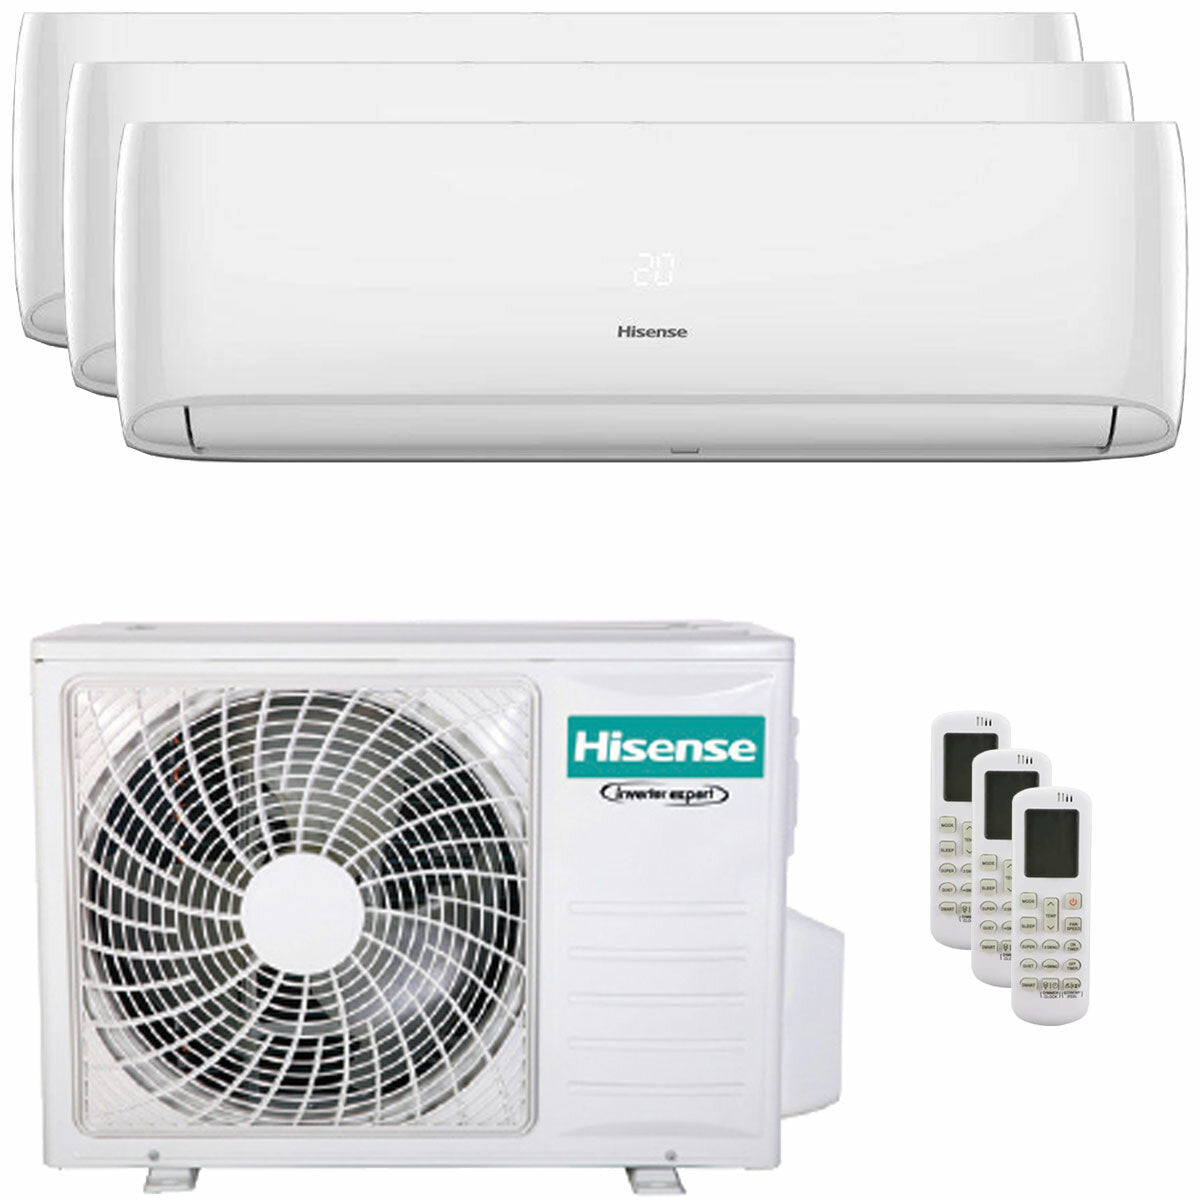 Hisense Hi-Comfort trial climatiseur split 9000+9000+9000 BTU onduleur A++ wifi unité extérieure 6,3 kW